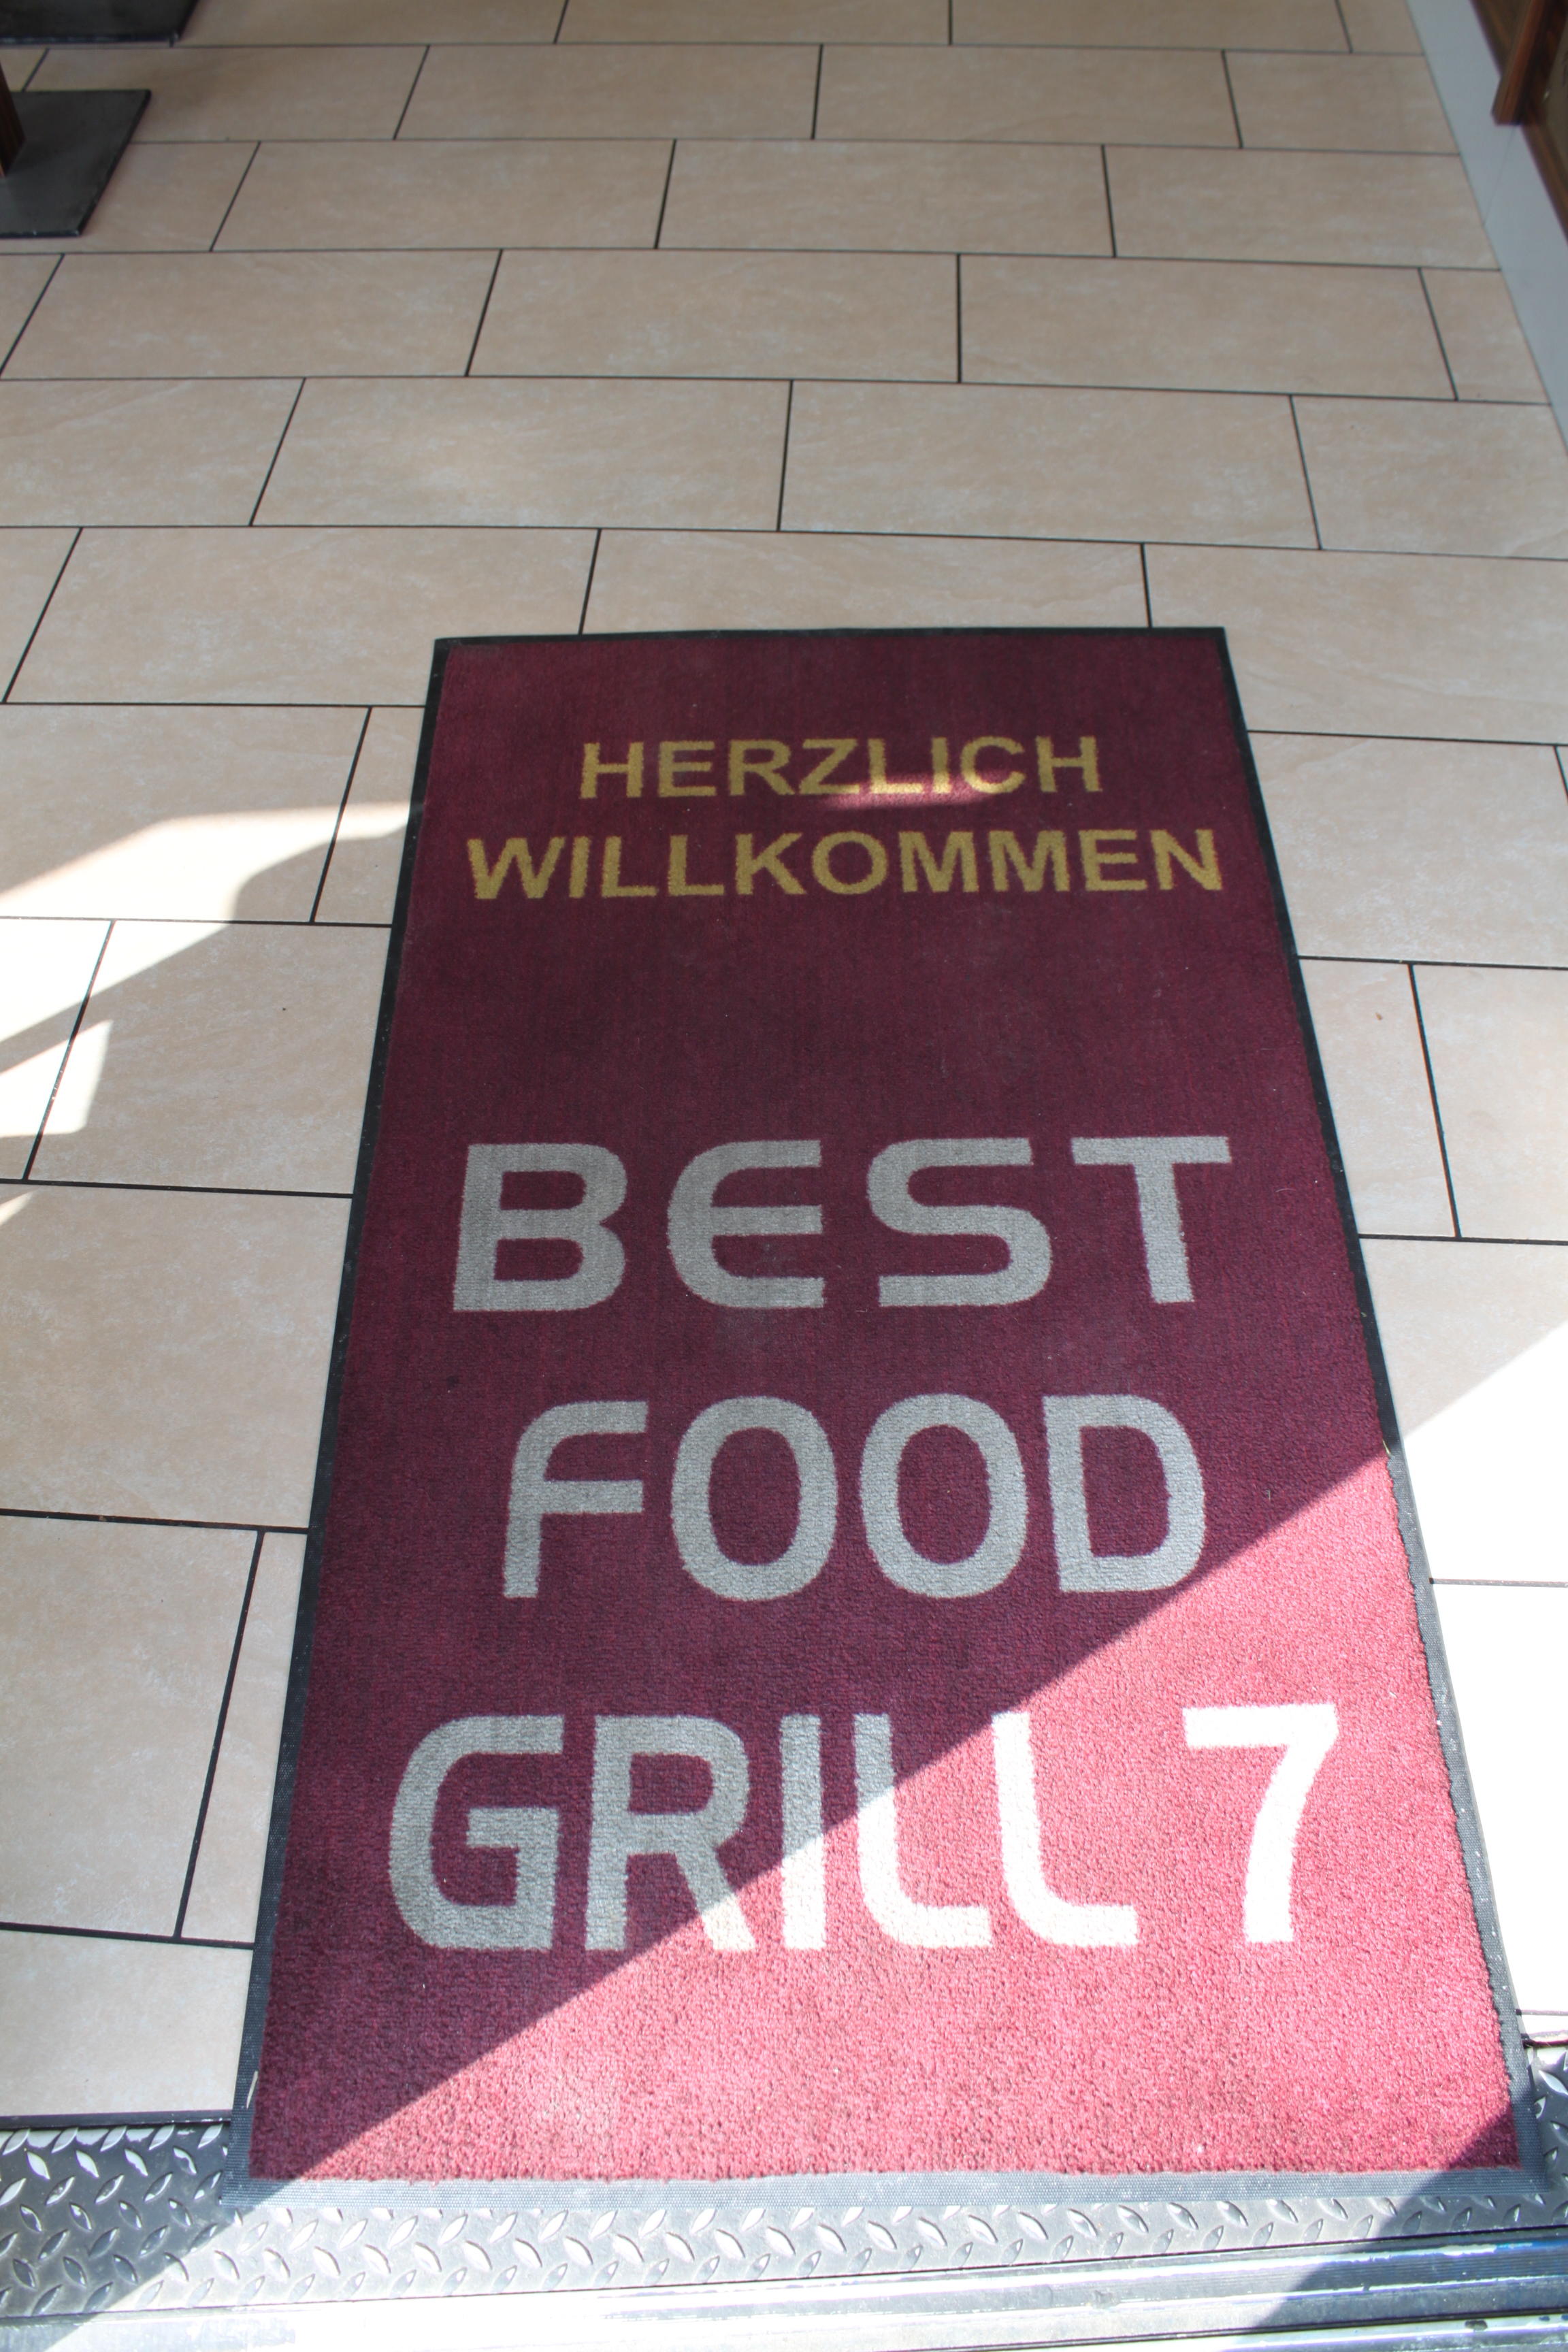 Bilder Best Food Grill 7